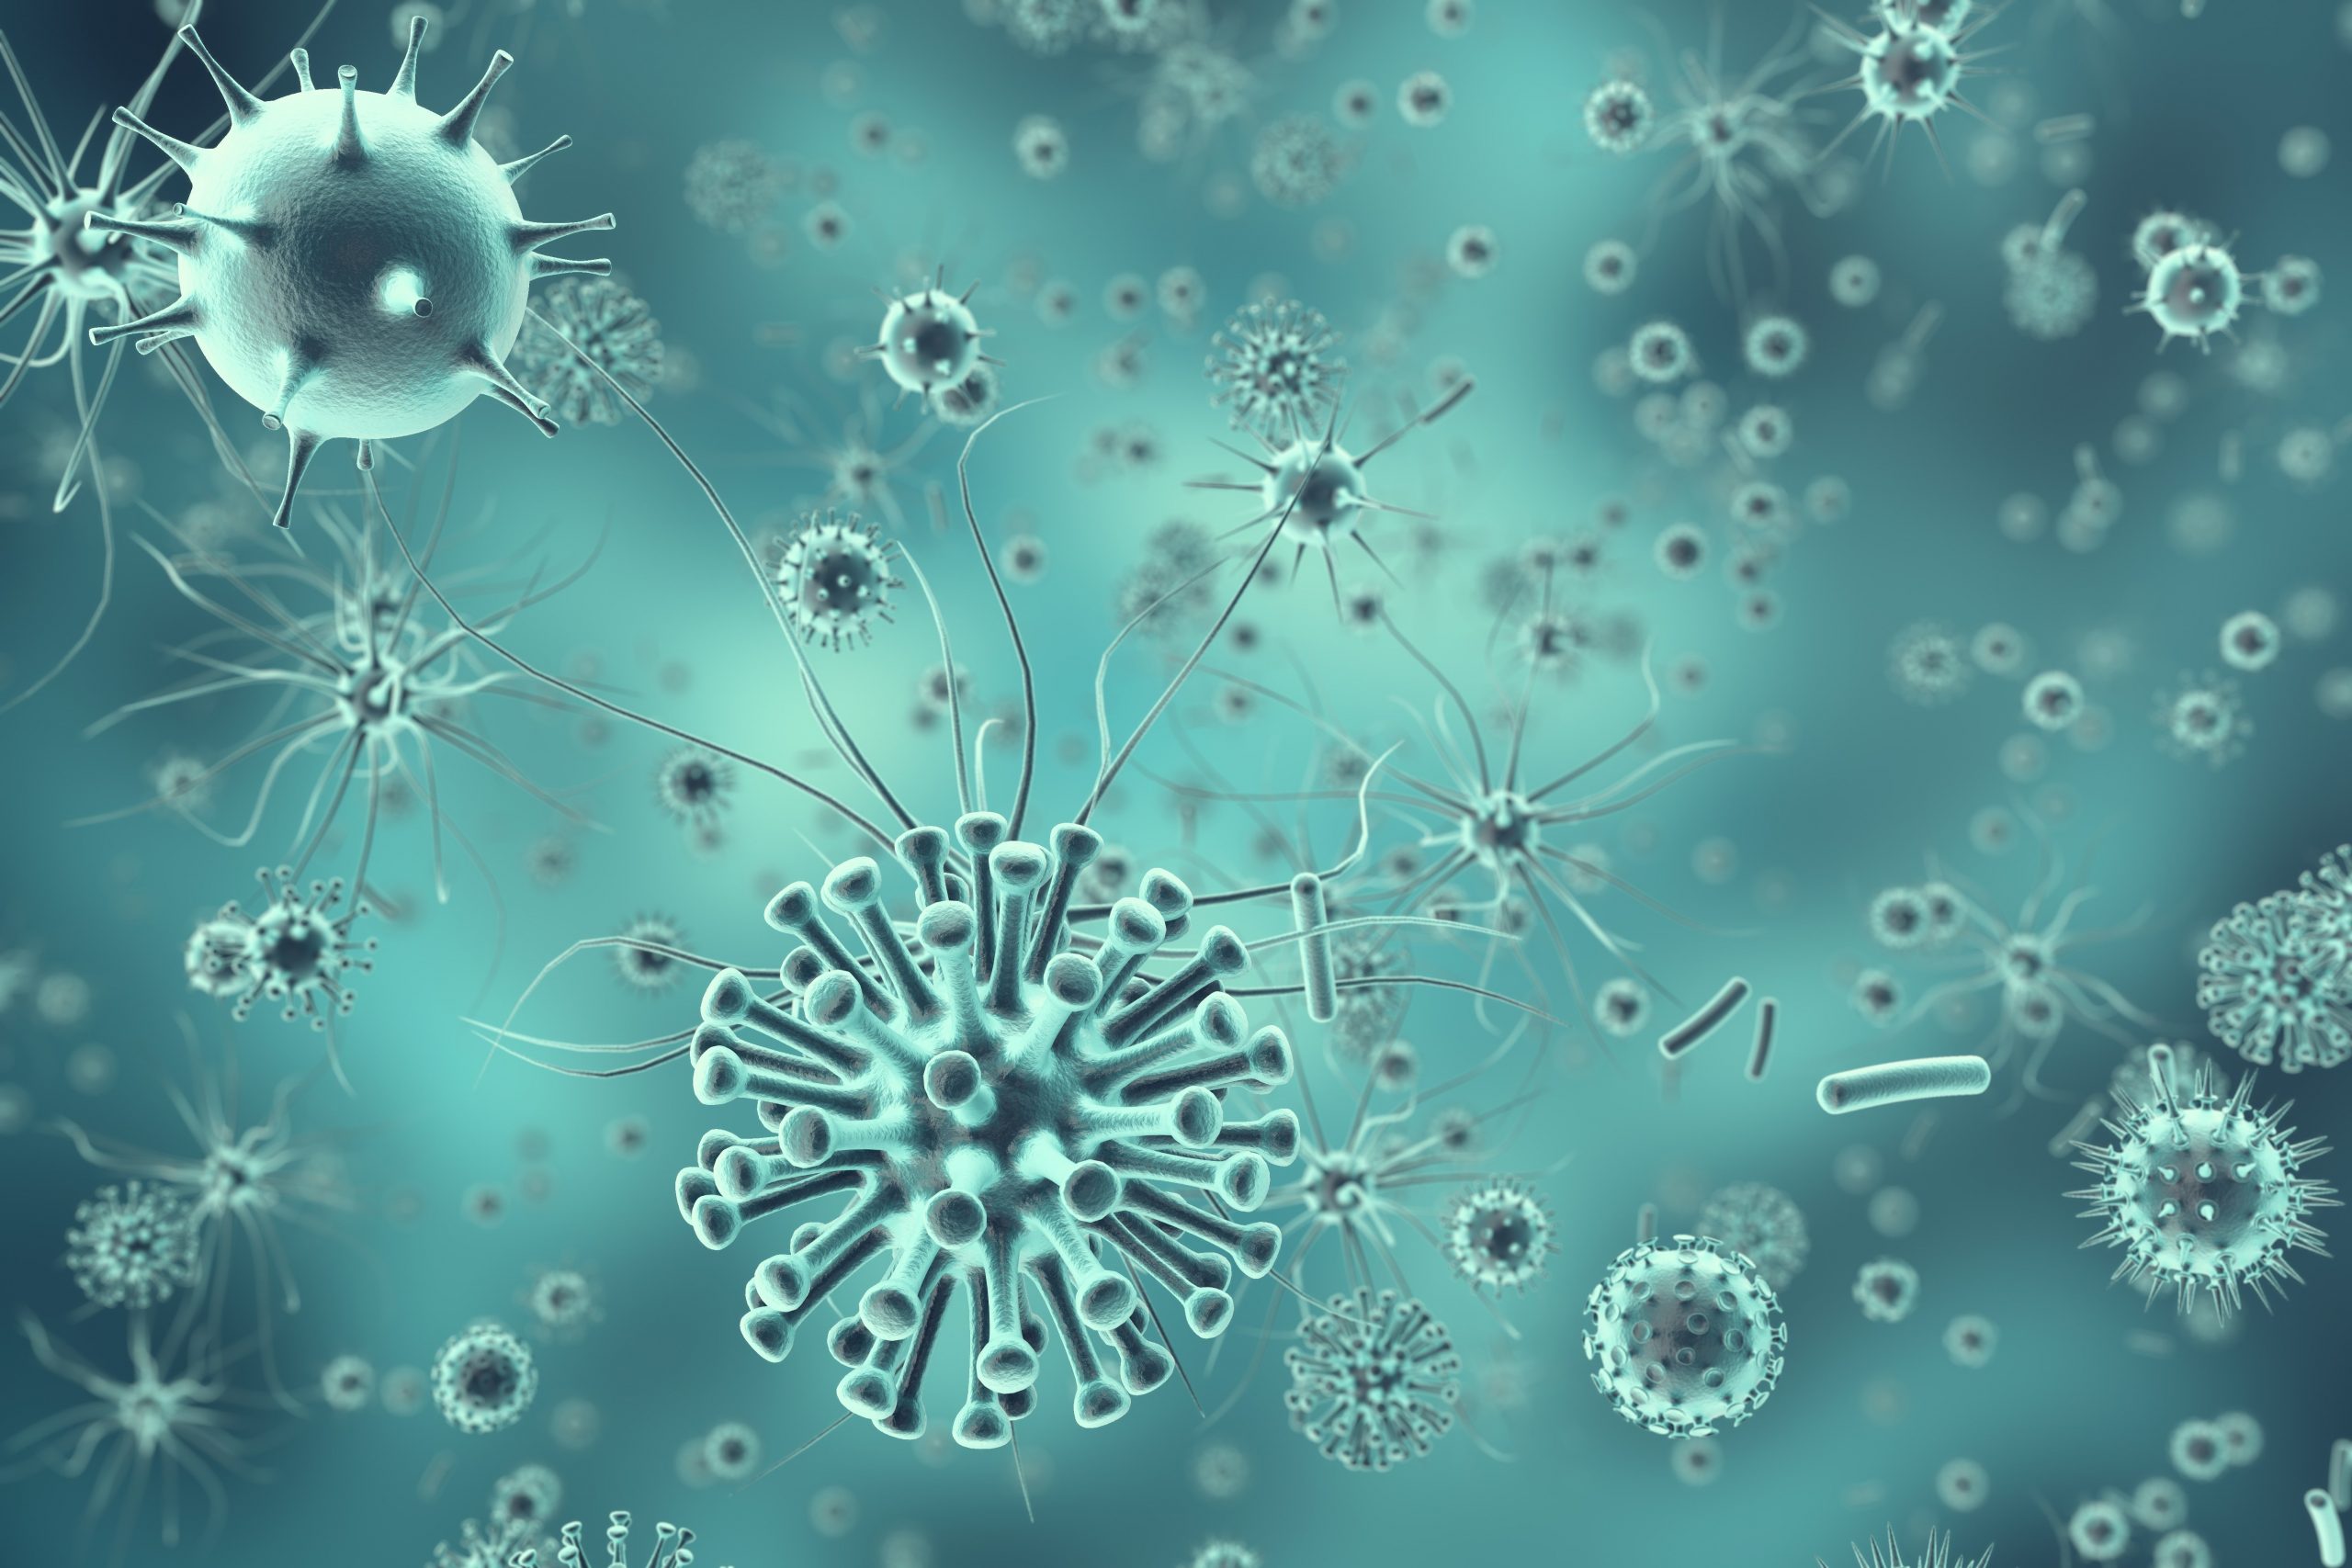 Hepatitis A Virus: Wreaking Havoc for Public Health